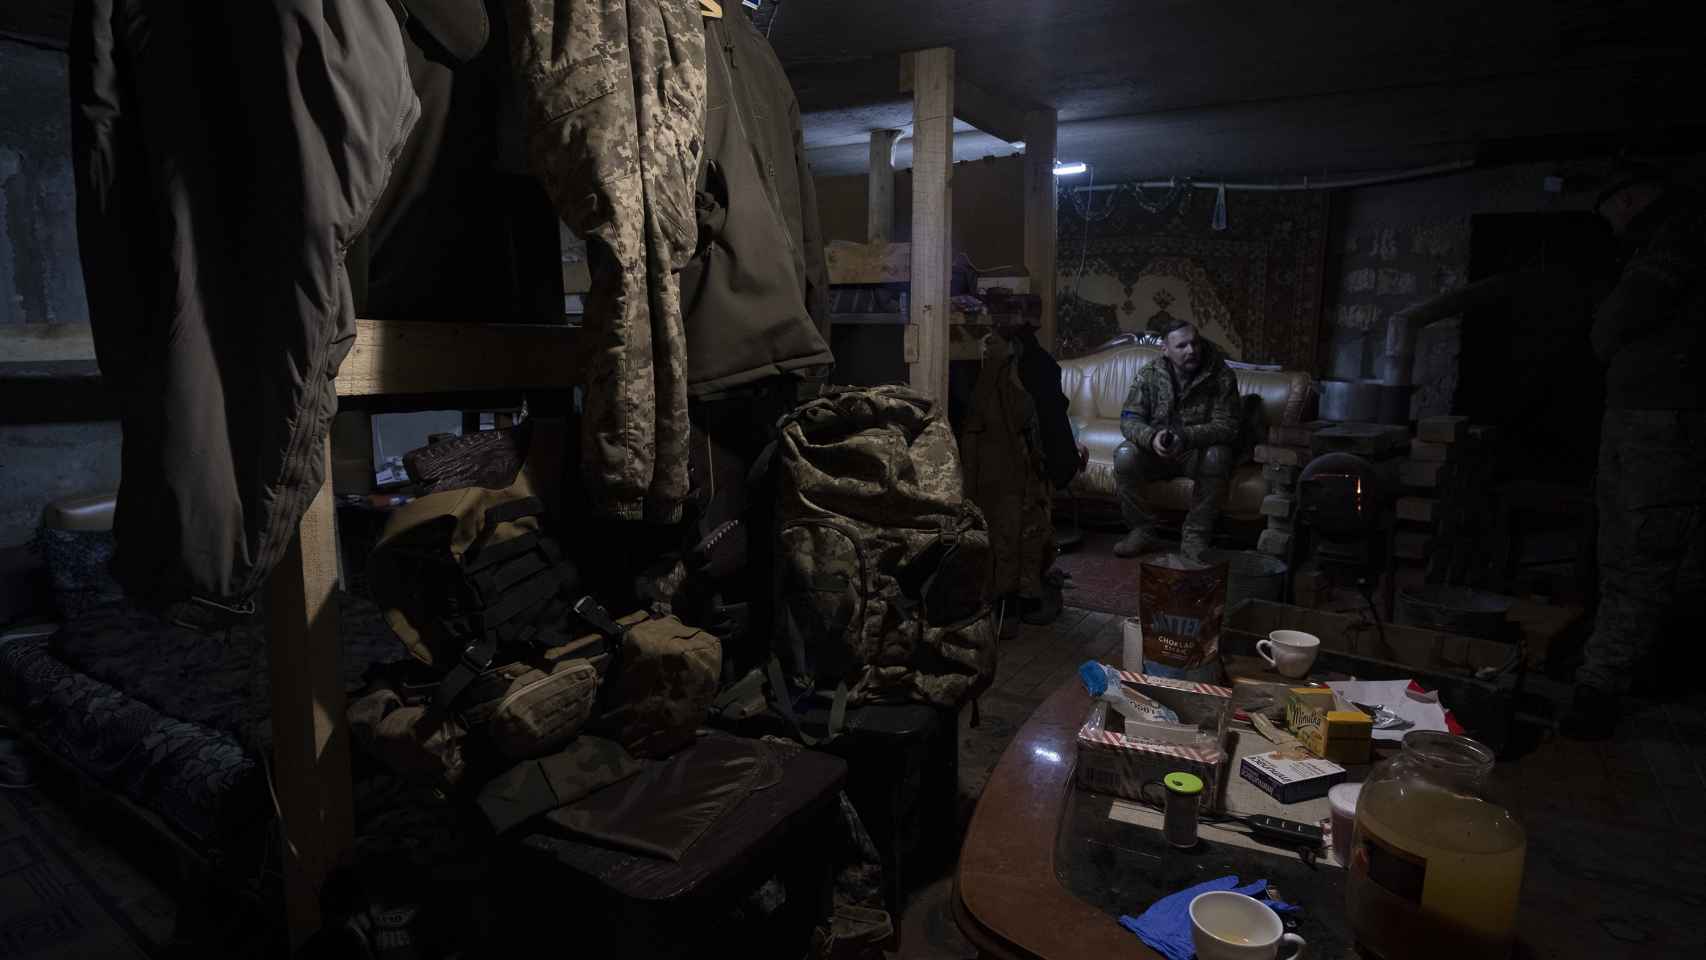 Búnker subterráneo donde viven los soldados ucranianos en el frente de combate de Vuhledar (Donetsk).